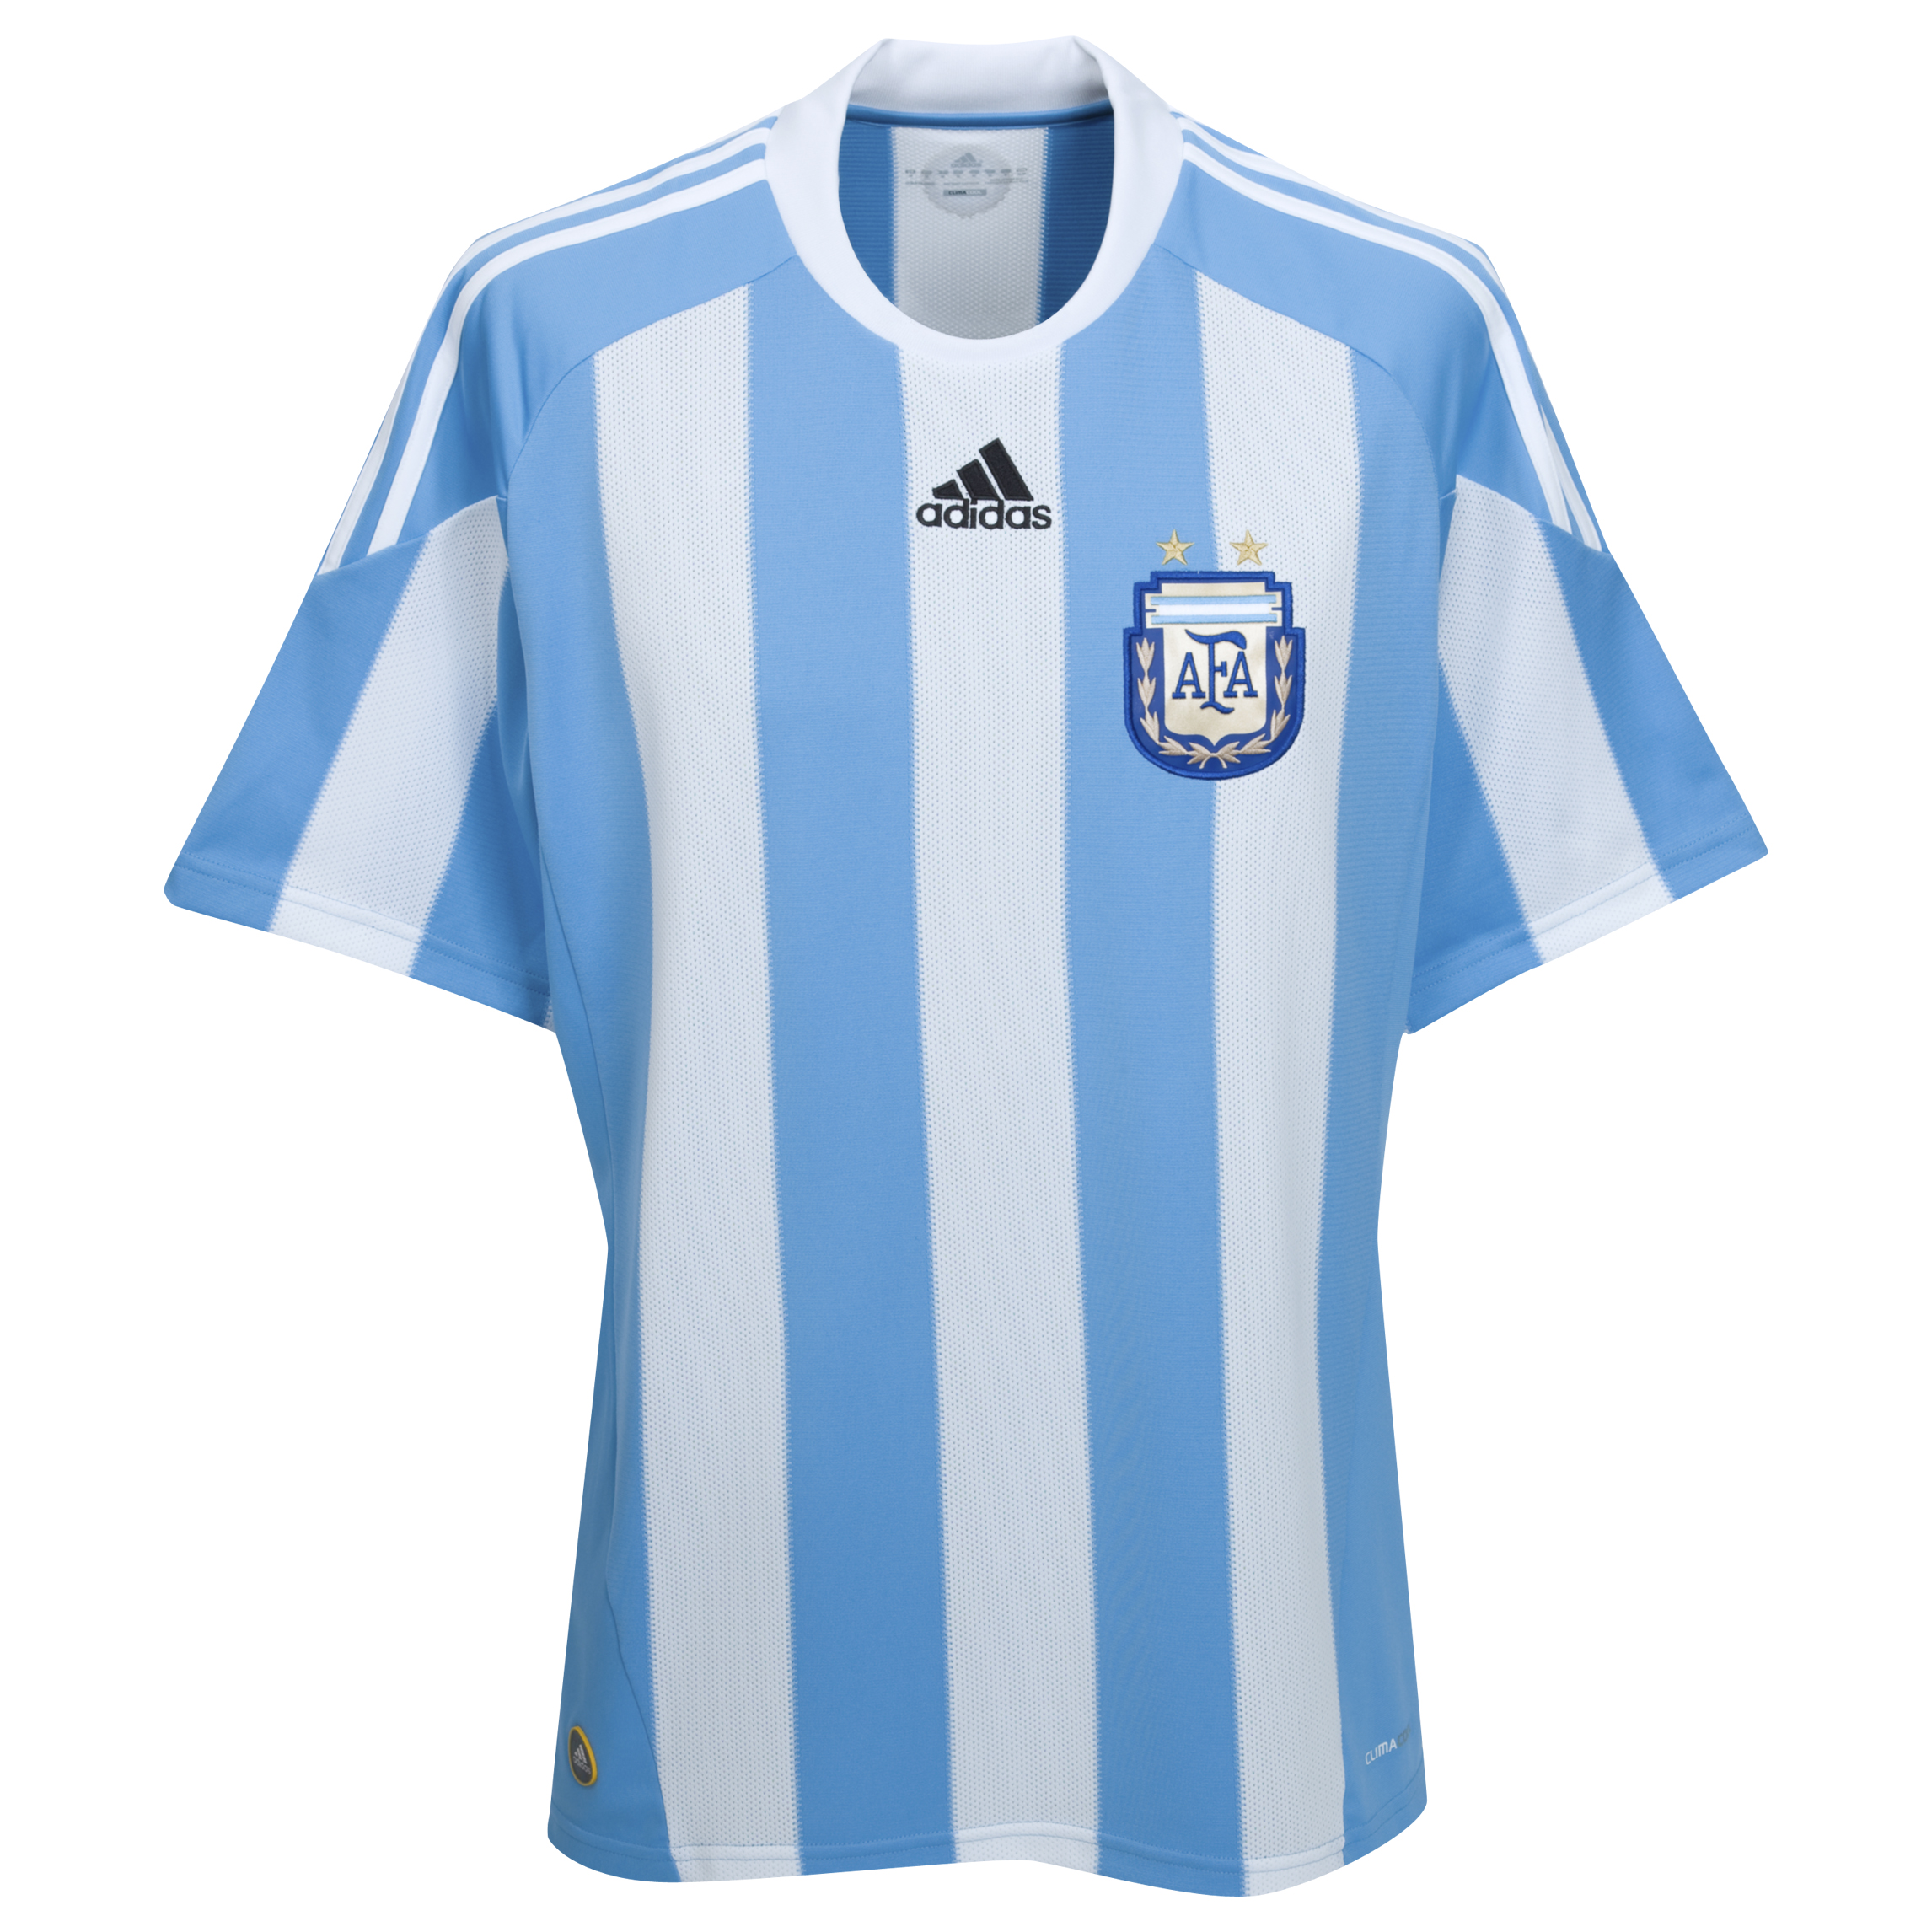 الملابس الخاصة بالمنتخبات في كأس العالم (جنوب أفريقيا 2010) Kb-63732